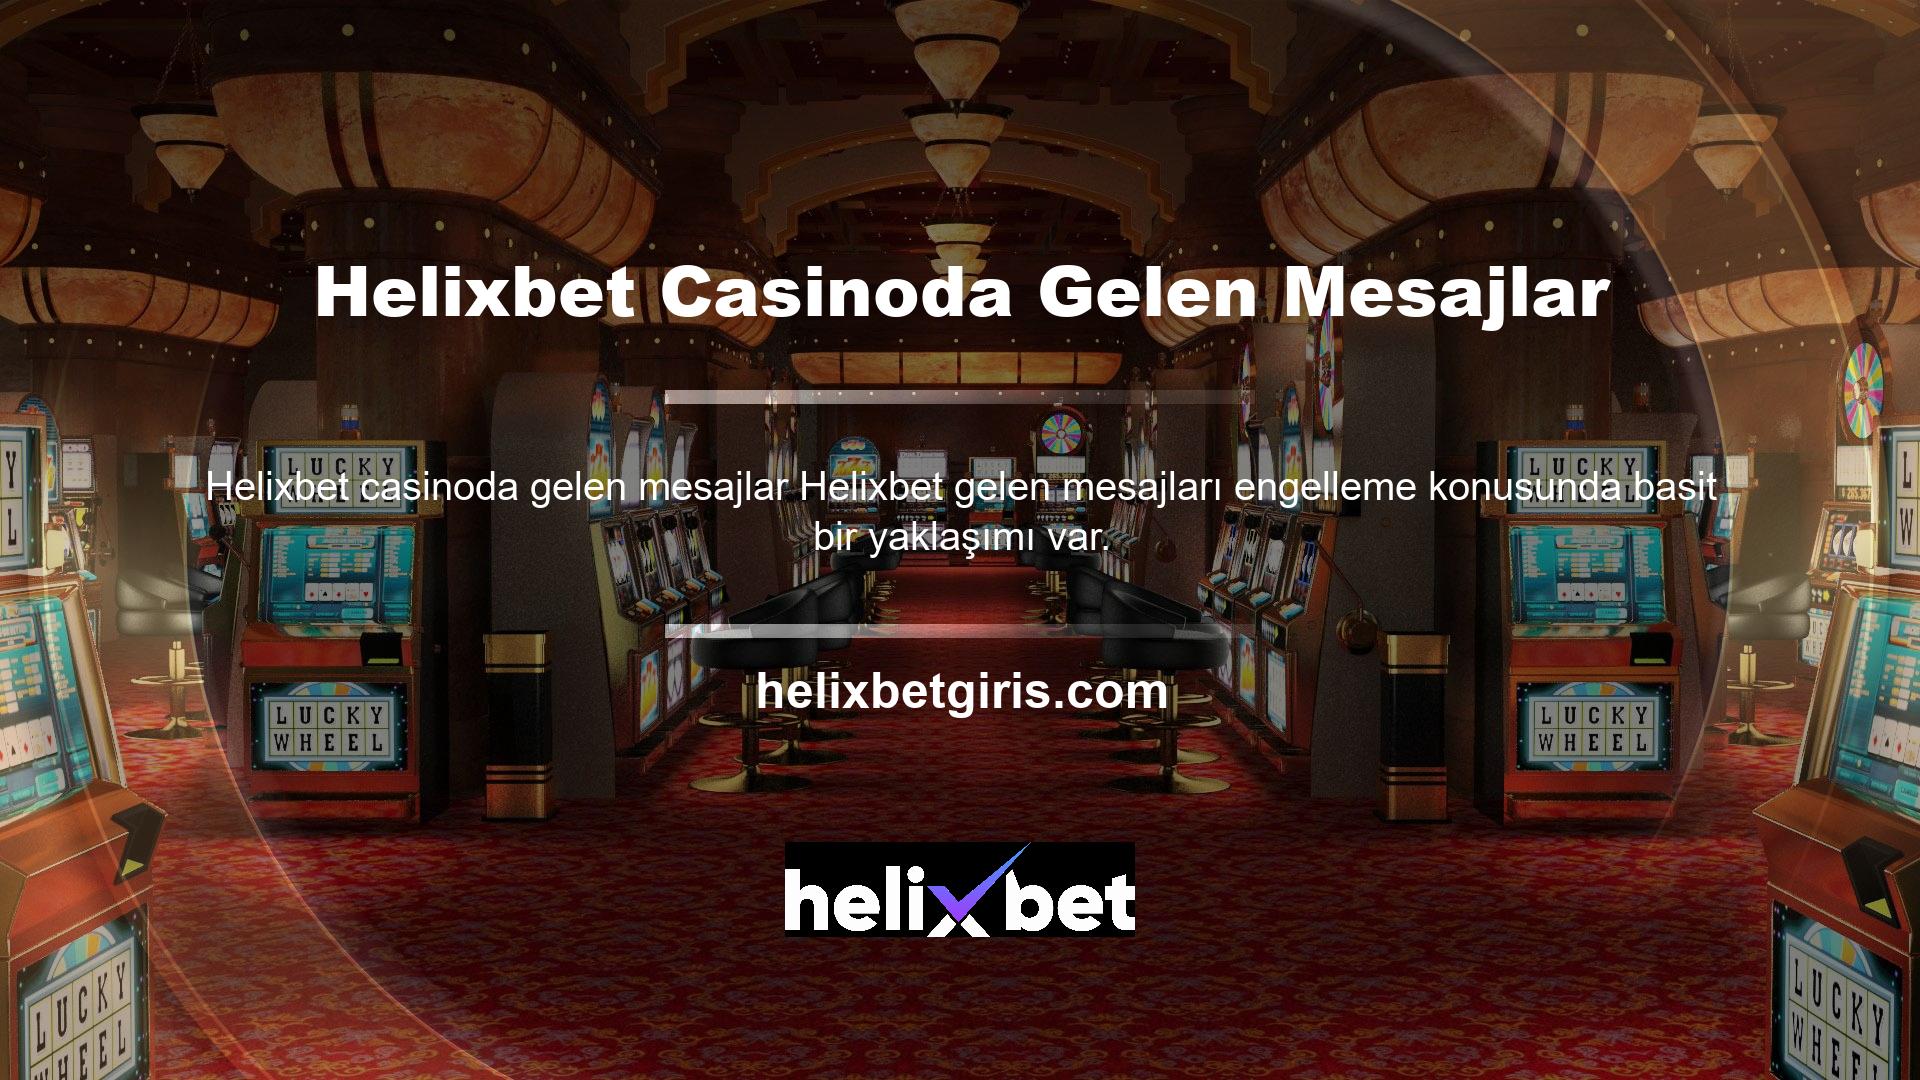 Casino siteleri üzerinden gönderilen mesajlar engellemeye tabidir